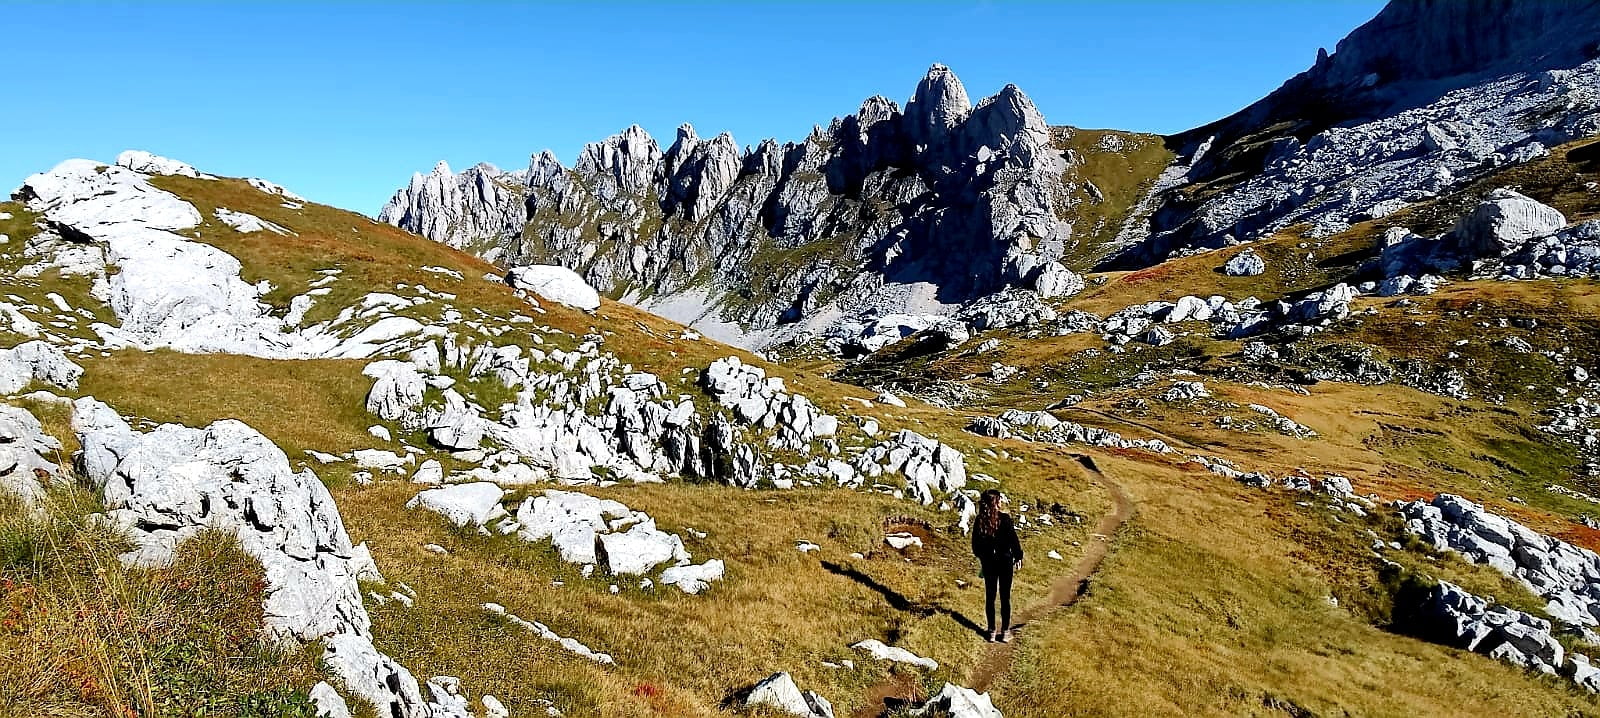 Reizen naar Montenegro? Beklim de hoogste top van het Durmitor National Park: Bobotov Kuk